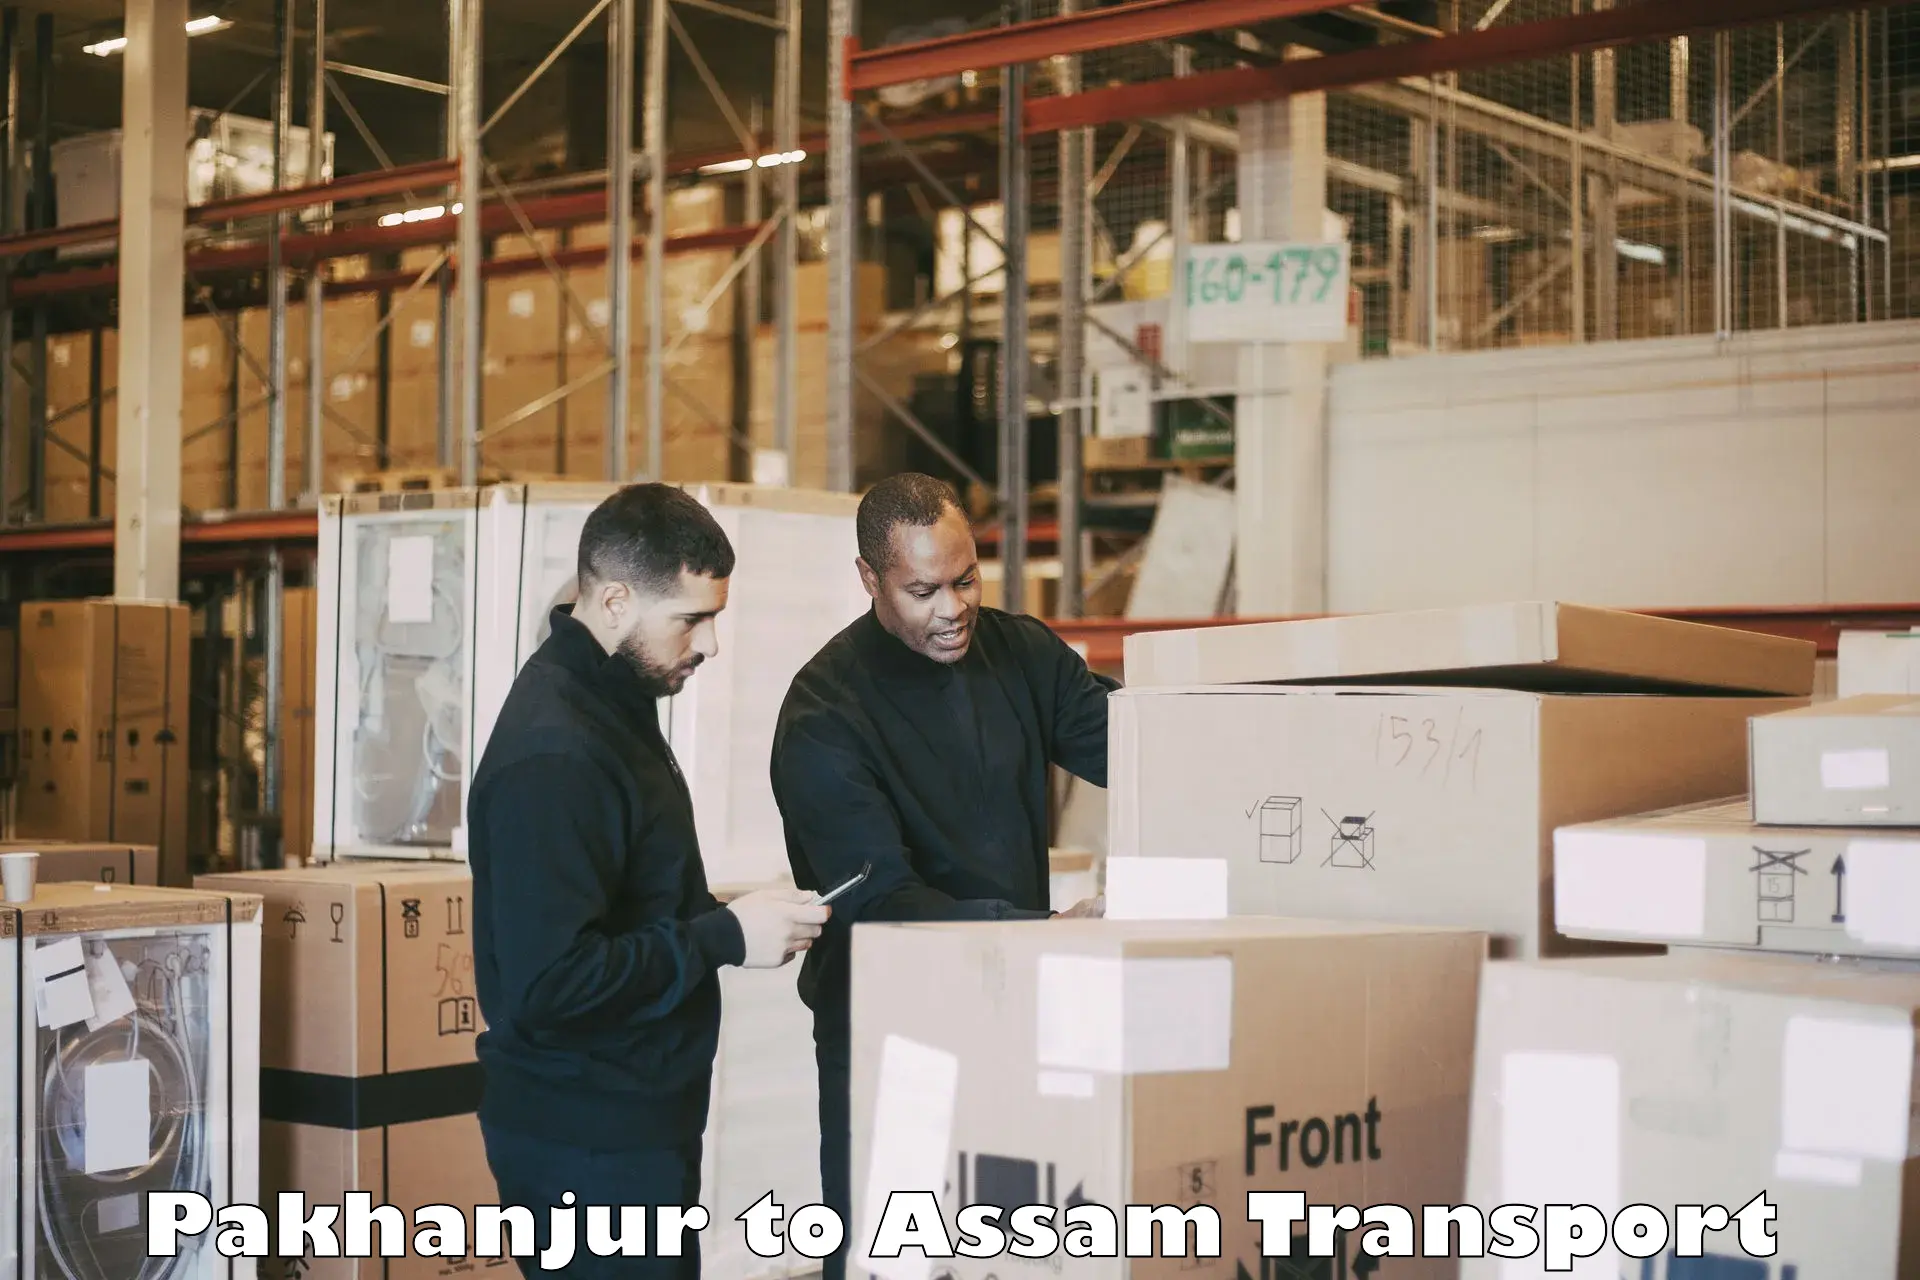 Furniture transport service in Pakhanjur to Karbi Anglong